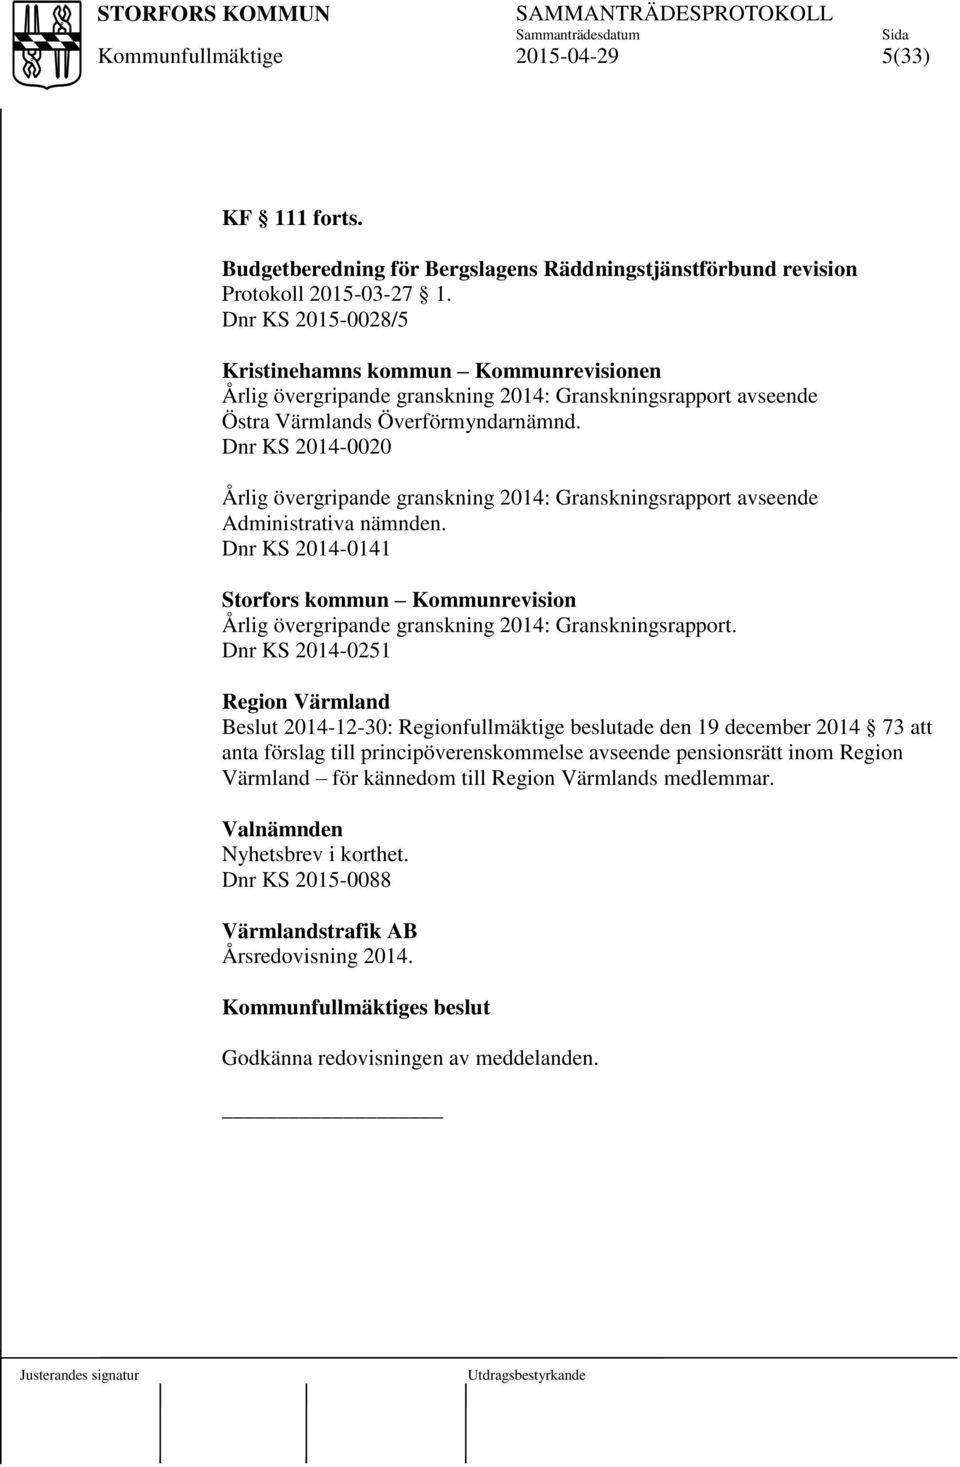 Dnr KS 2014-0020 Årlig övergripande granskning 2014: Granskningsrapport avseende Administrativa nämnden.